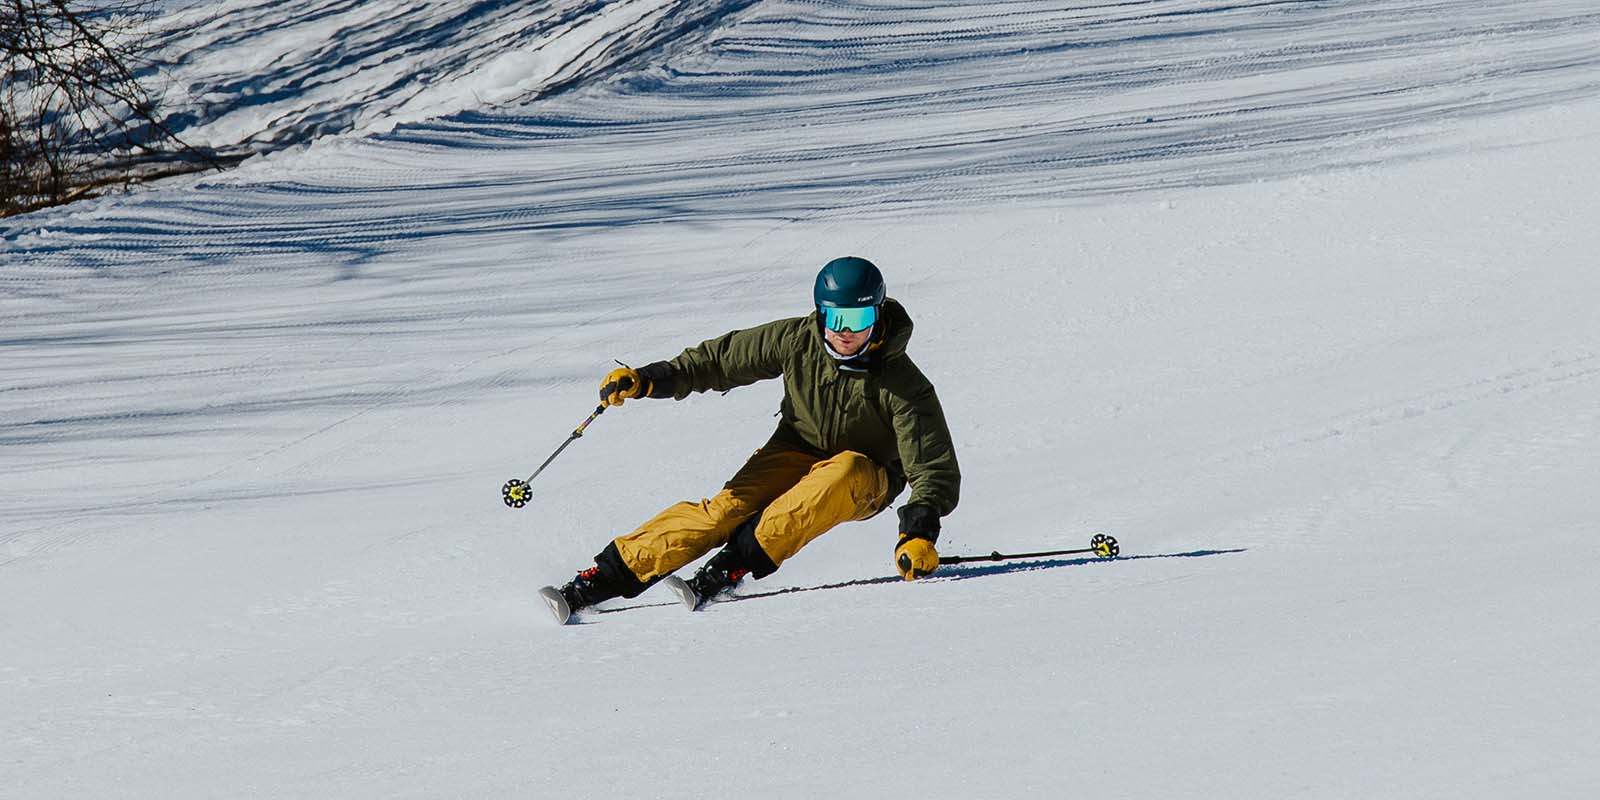 Tyler, The Ski Monster, TSM, skiing, ski test, ski, winter, snow